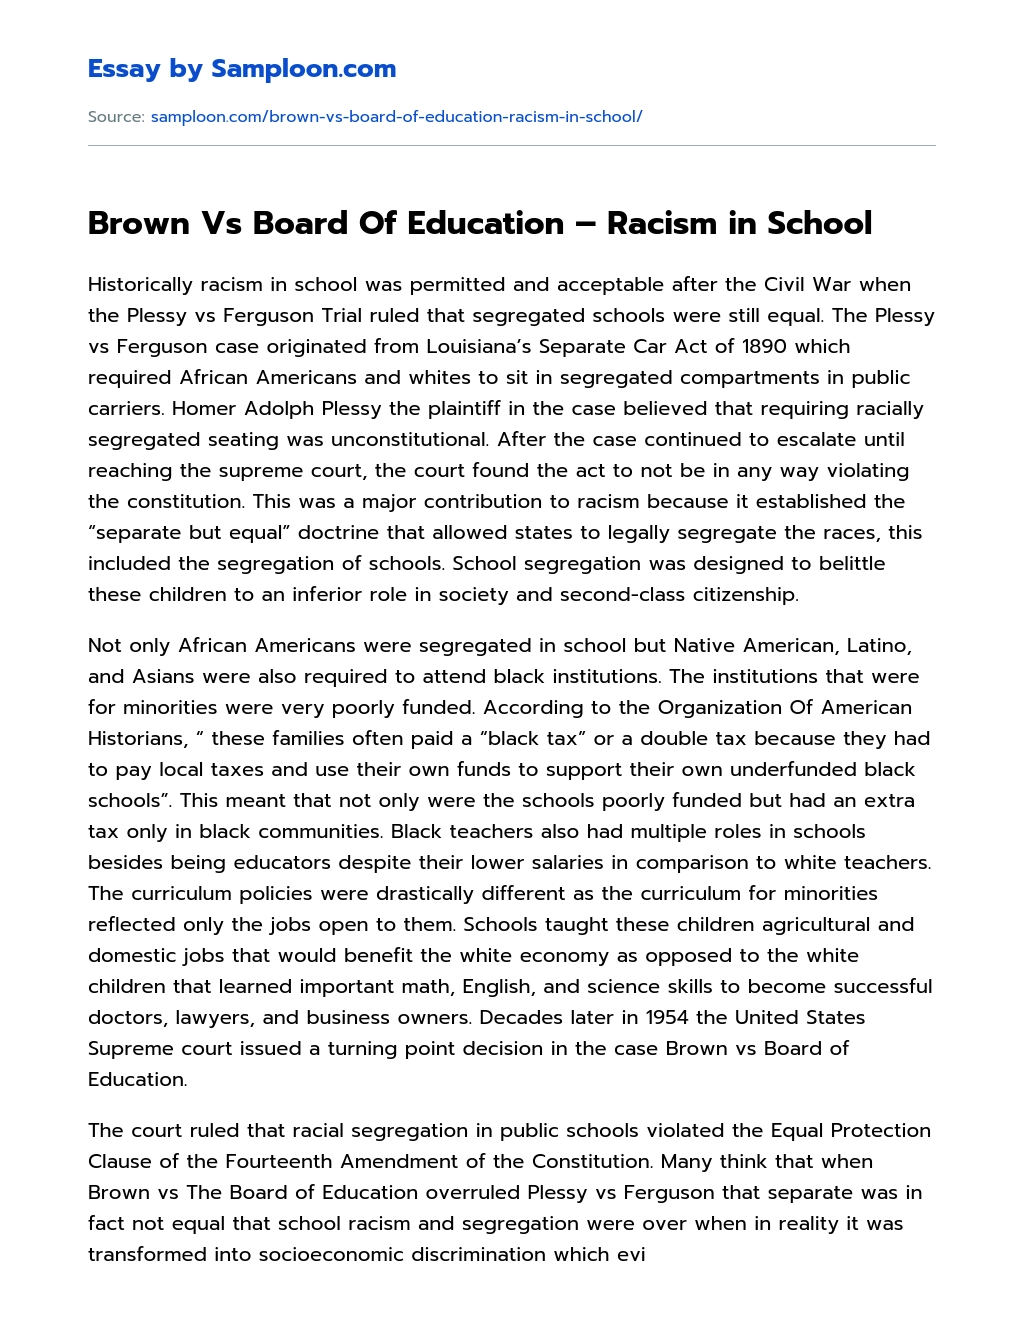 Brown Vs Board Of Education – Racism in School essay